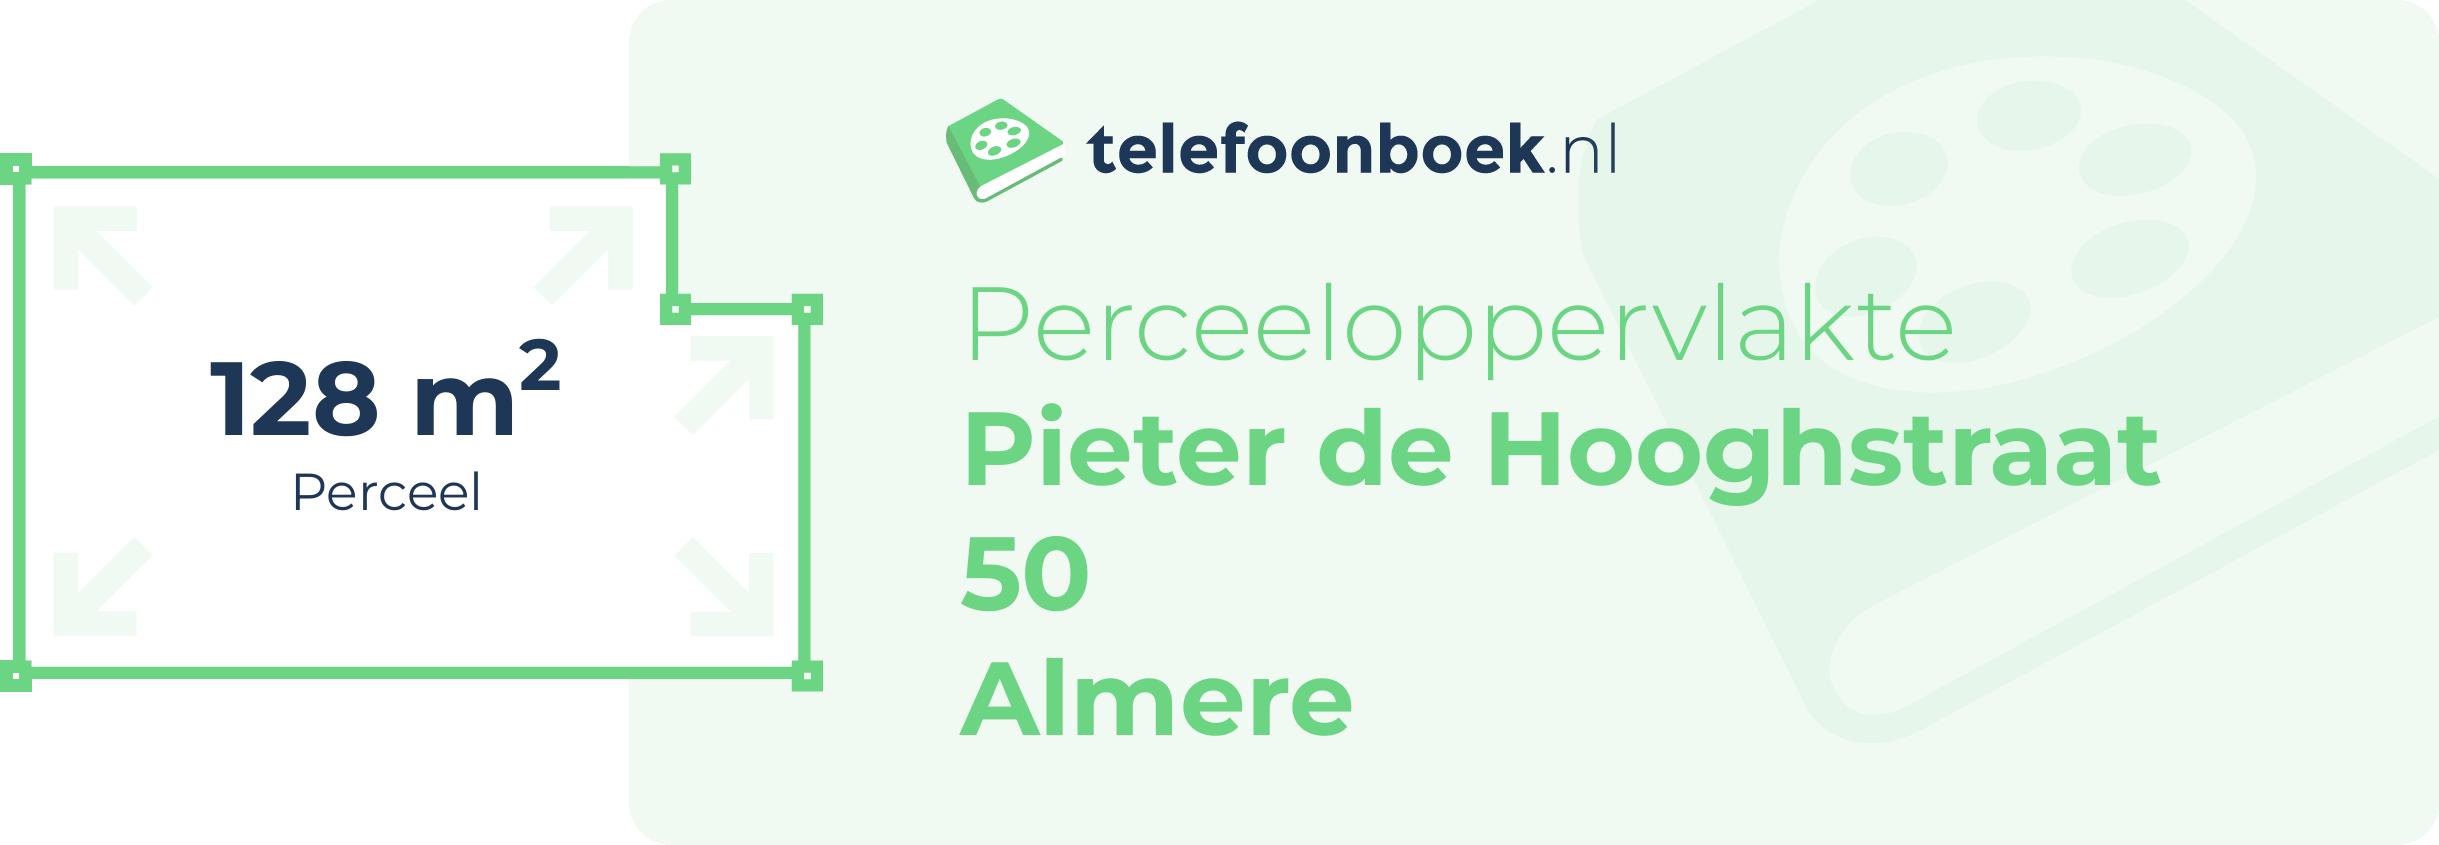 Perceeloppervlakte Pieter De Hooghstraat 50 Almere